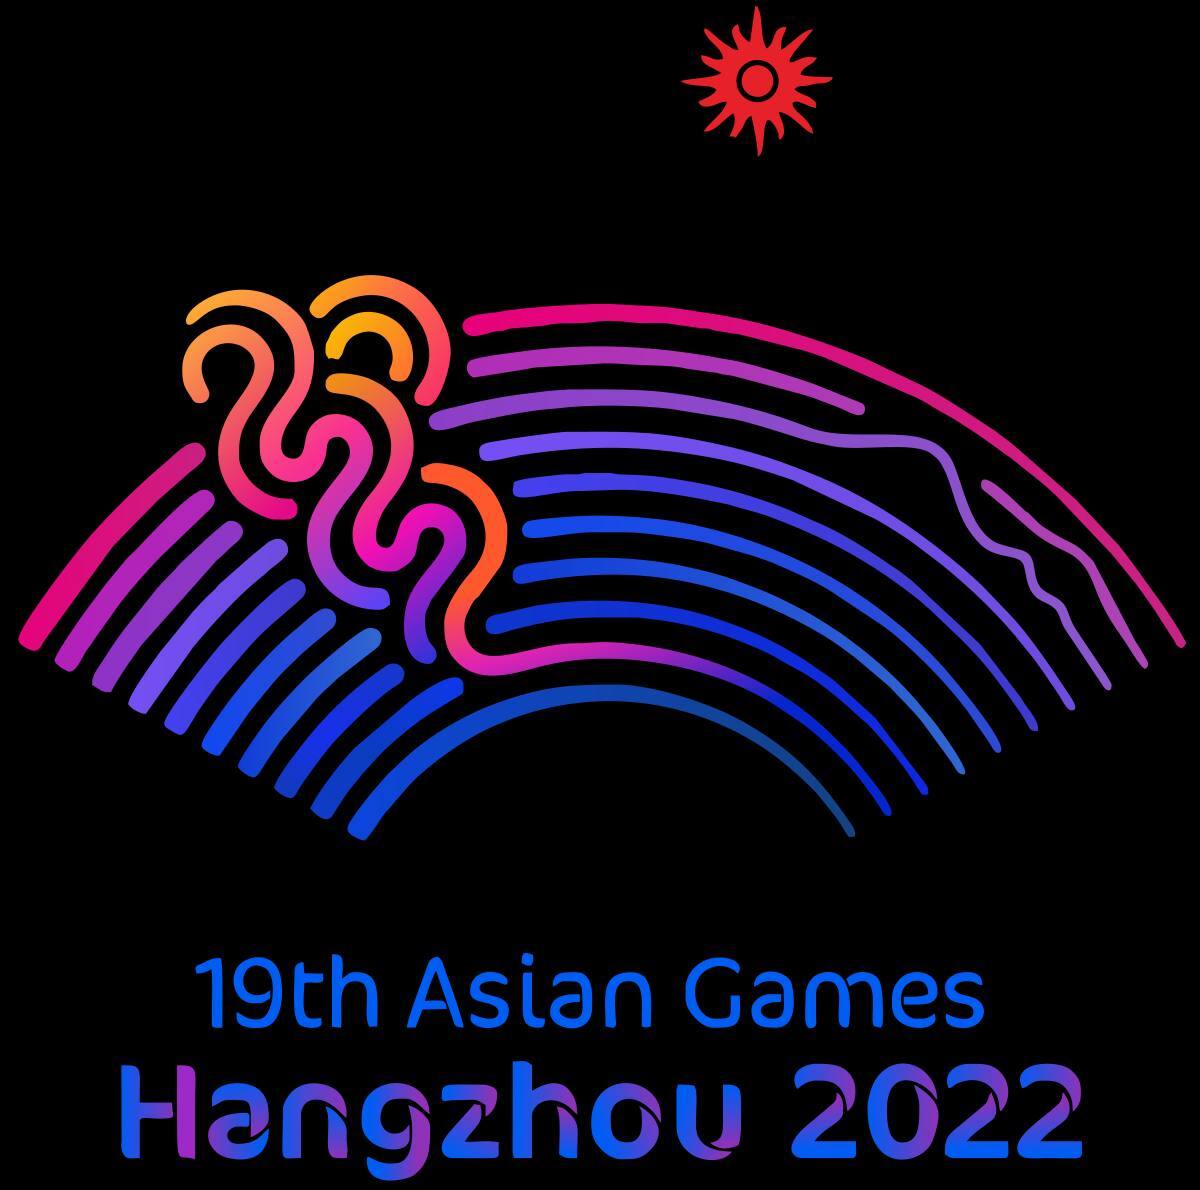 ۴ نشان از بازی‌های آسیایی هانگژو به قزوین رسید